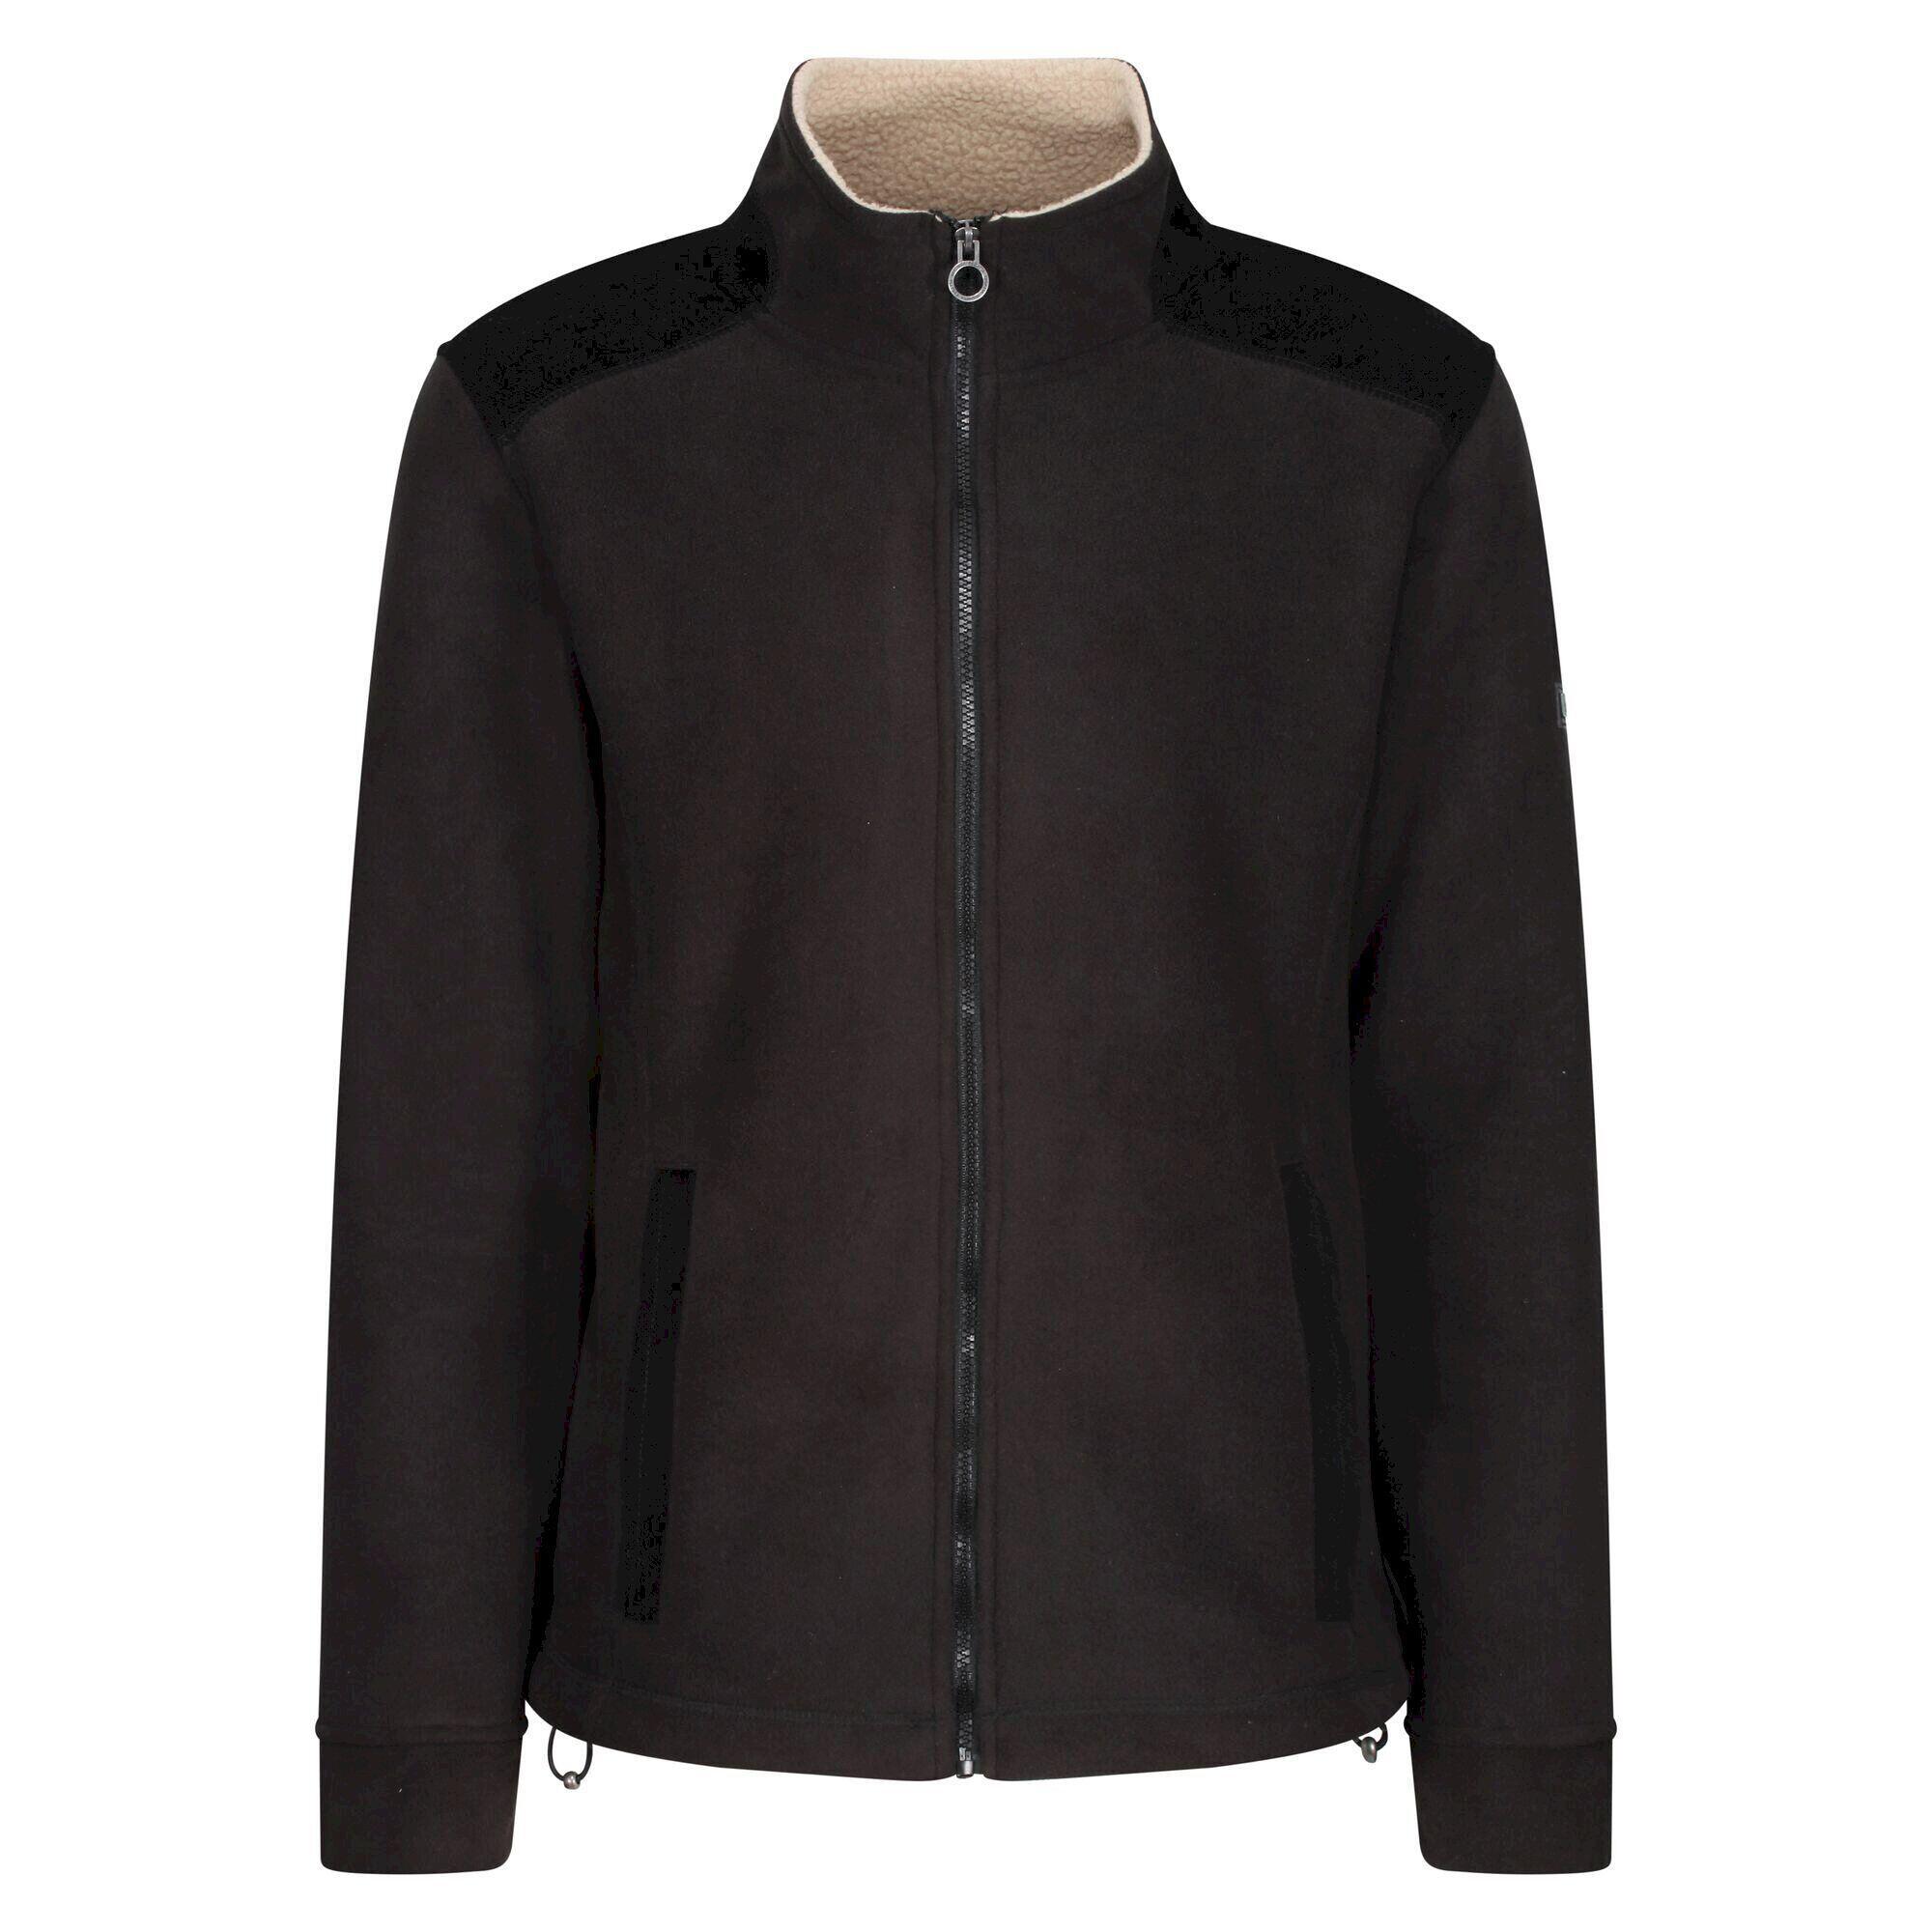 REGATTA Mens Faversham Full Zip Fleece Jacket (Black)